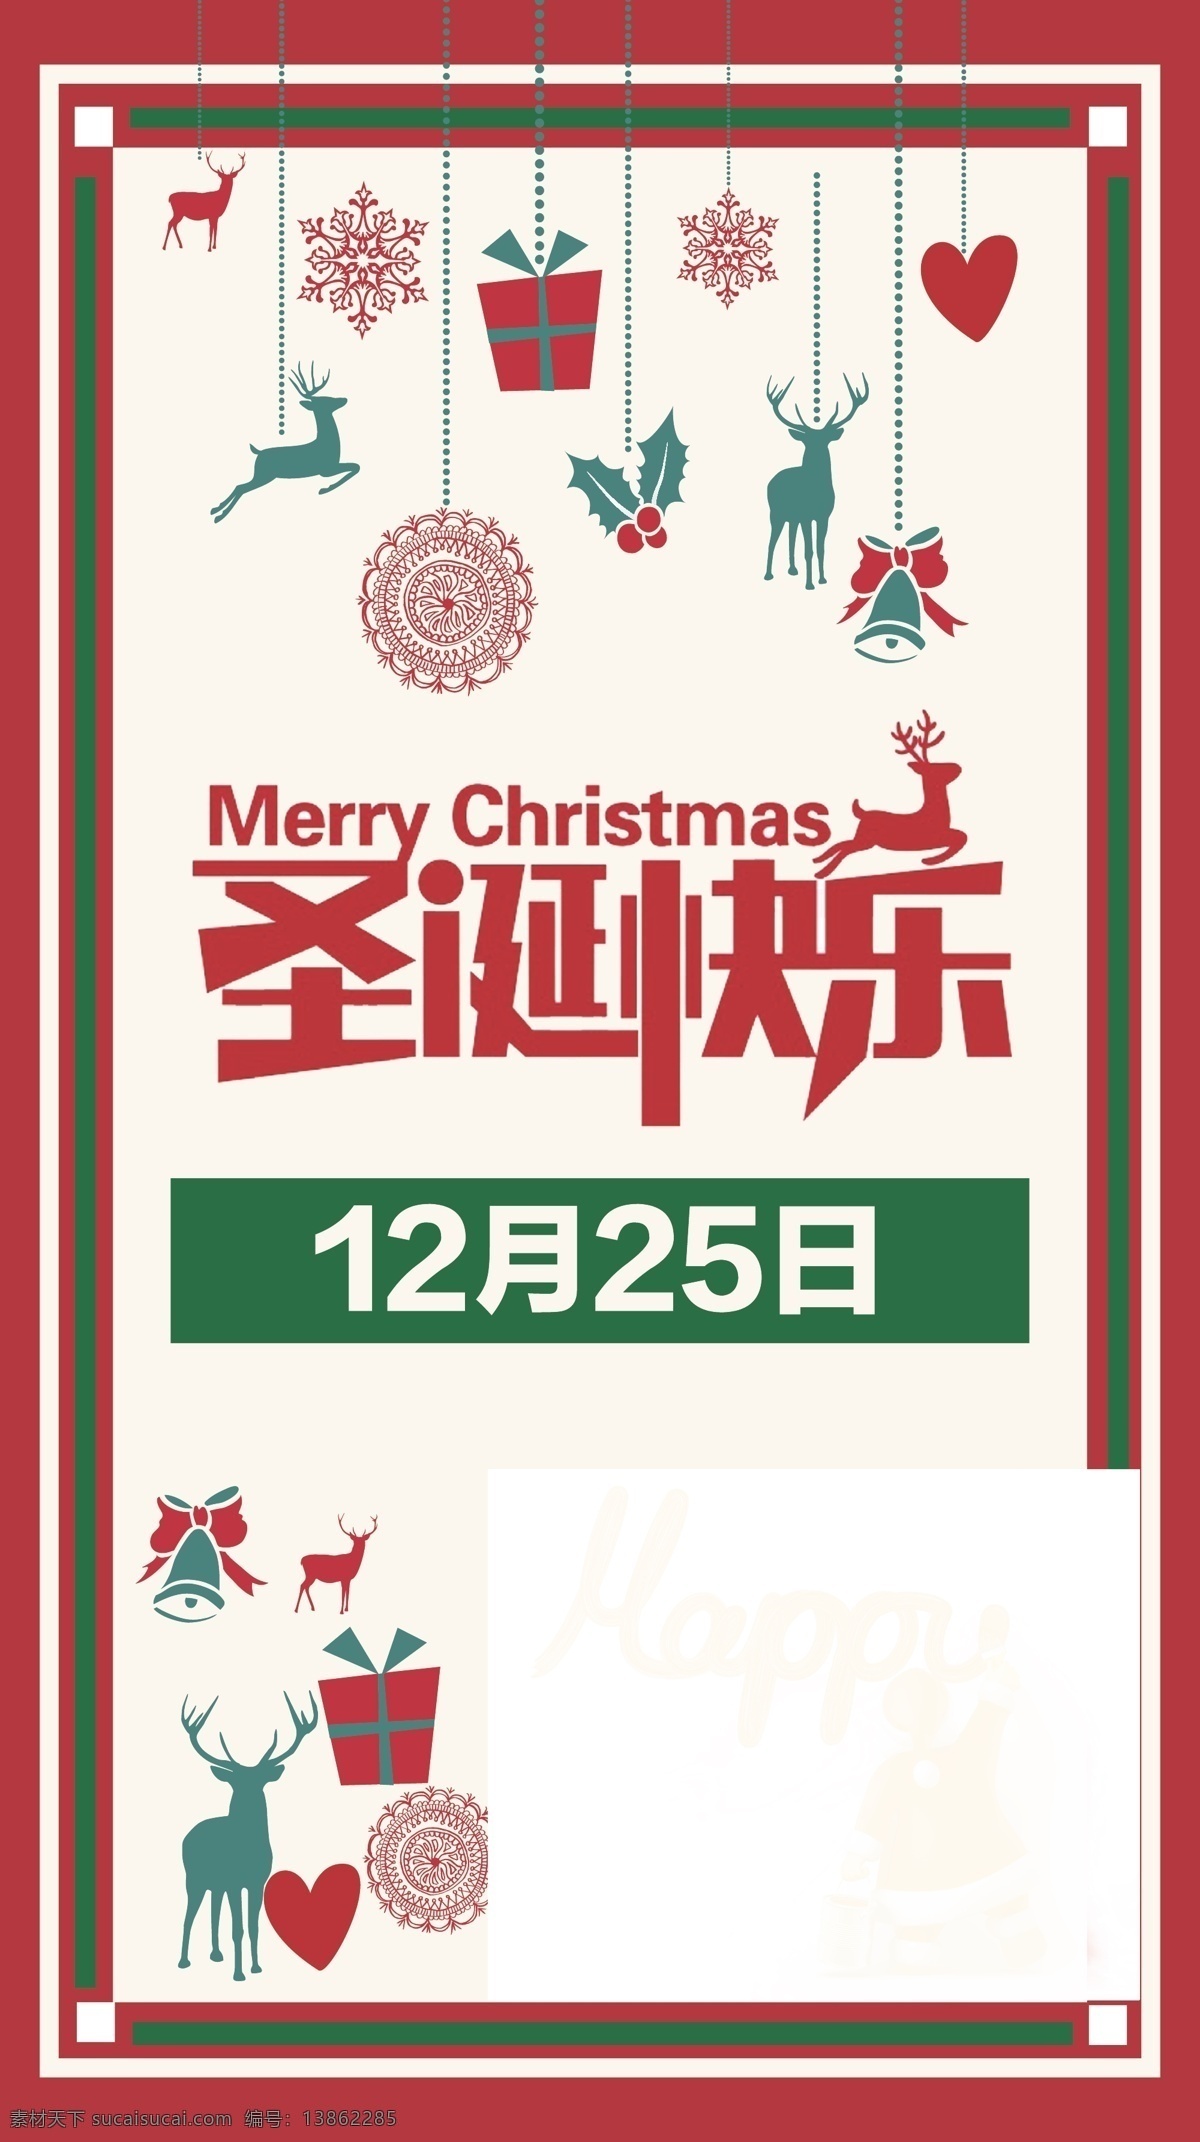 微信刷屏 圣诞贺卡 比较简单 圣诞 节日 文化艺术 节日庆祝